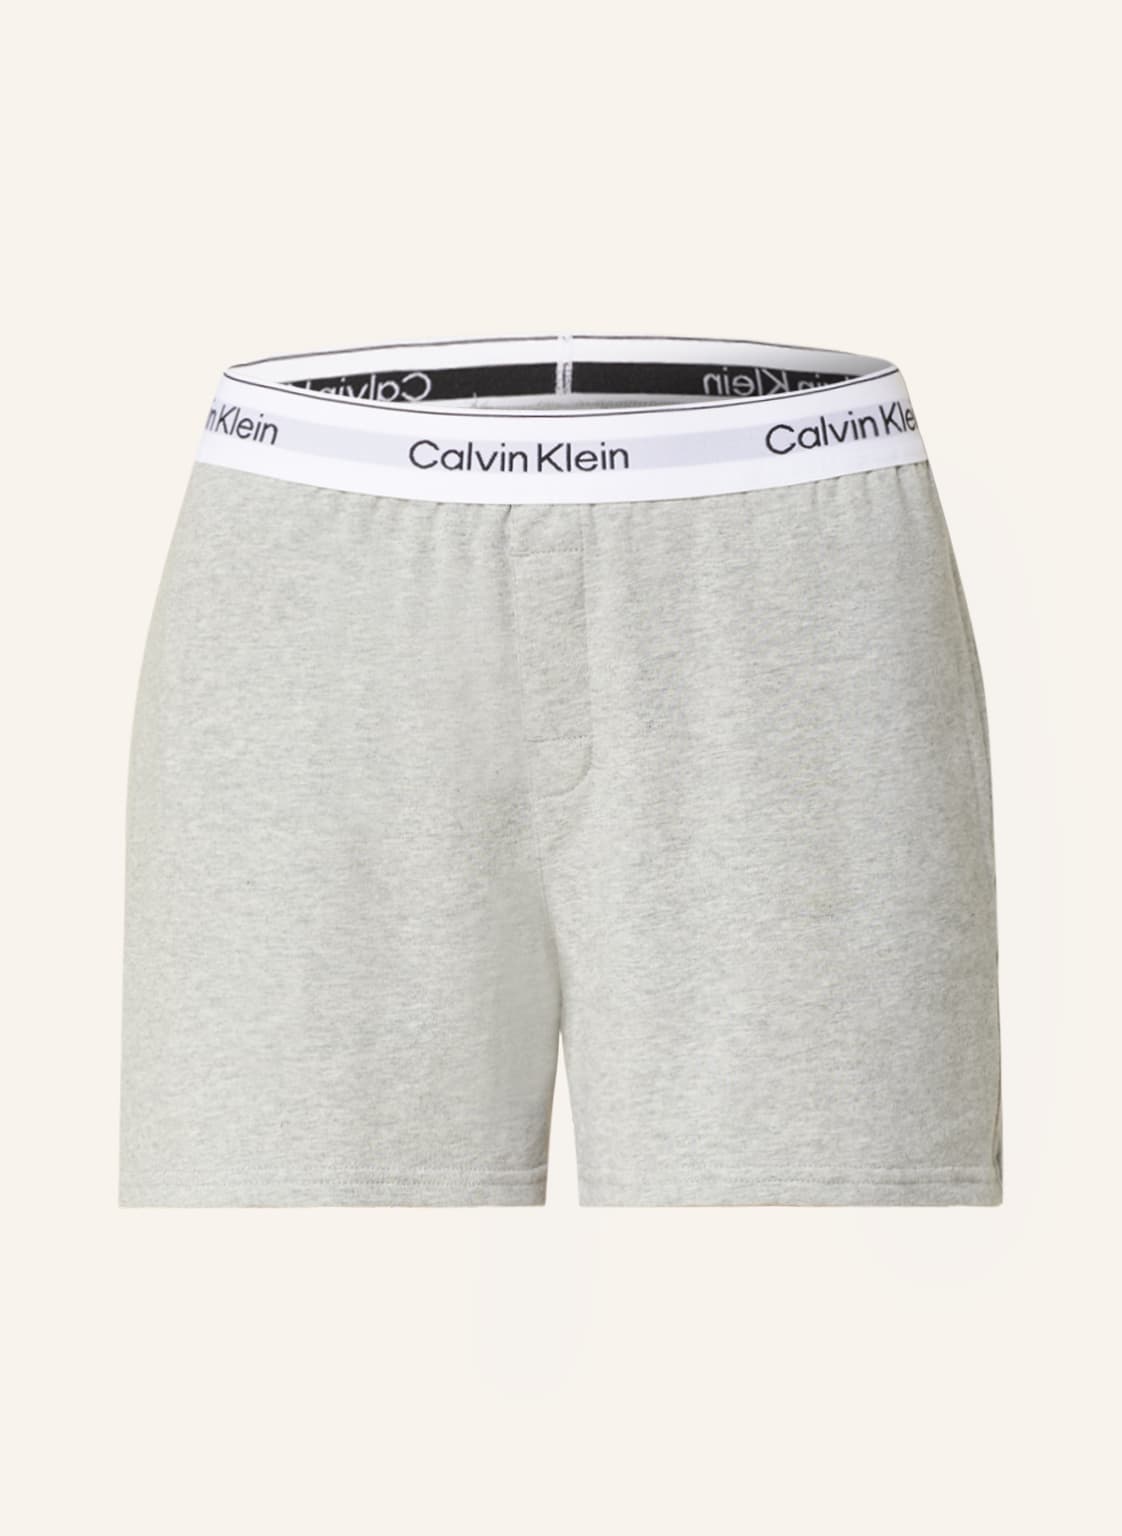 Calvin Klein Schlafshorts Modern Cotton grau von Calvin Klein